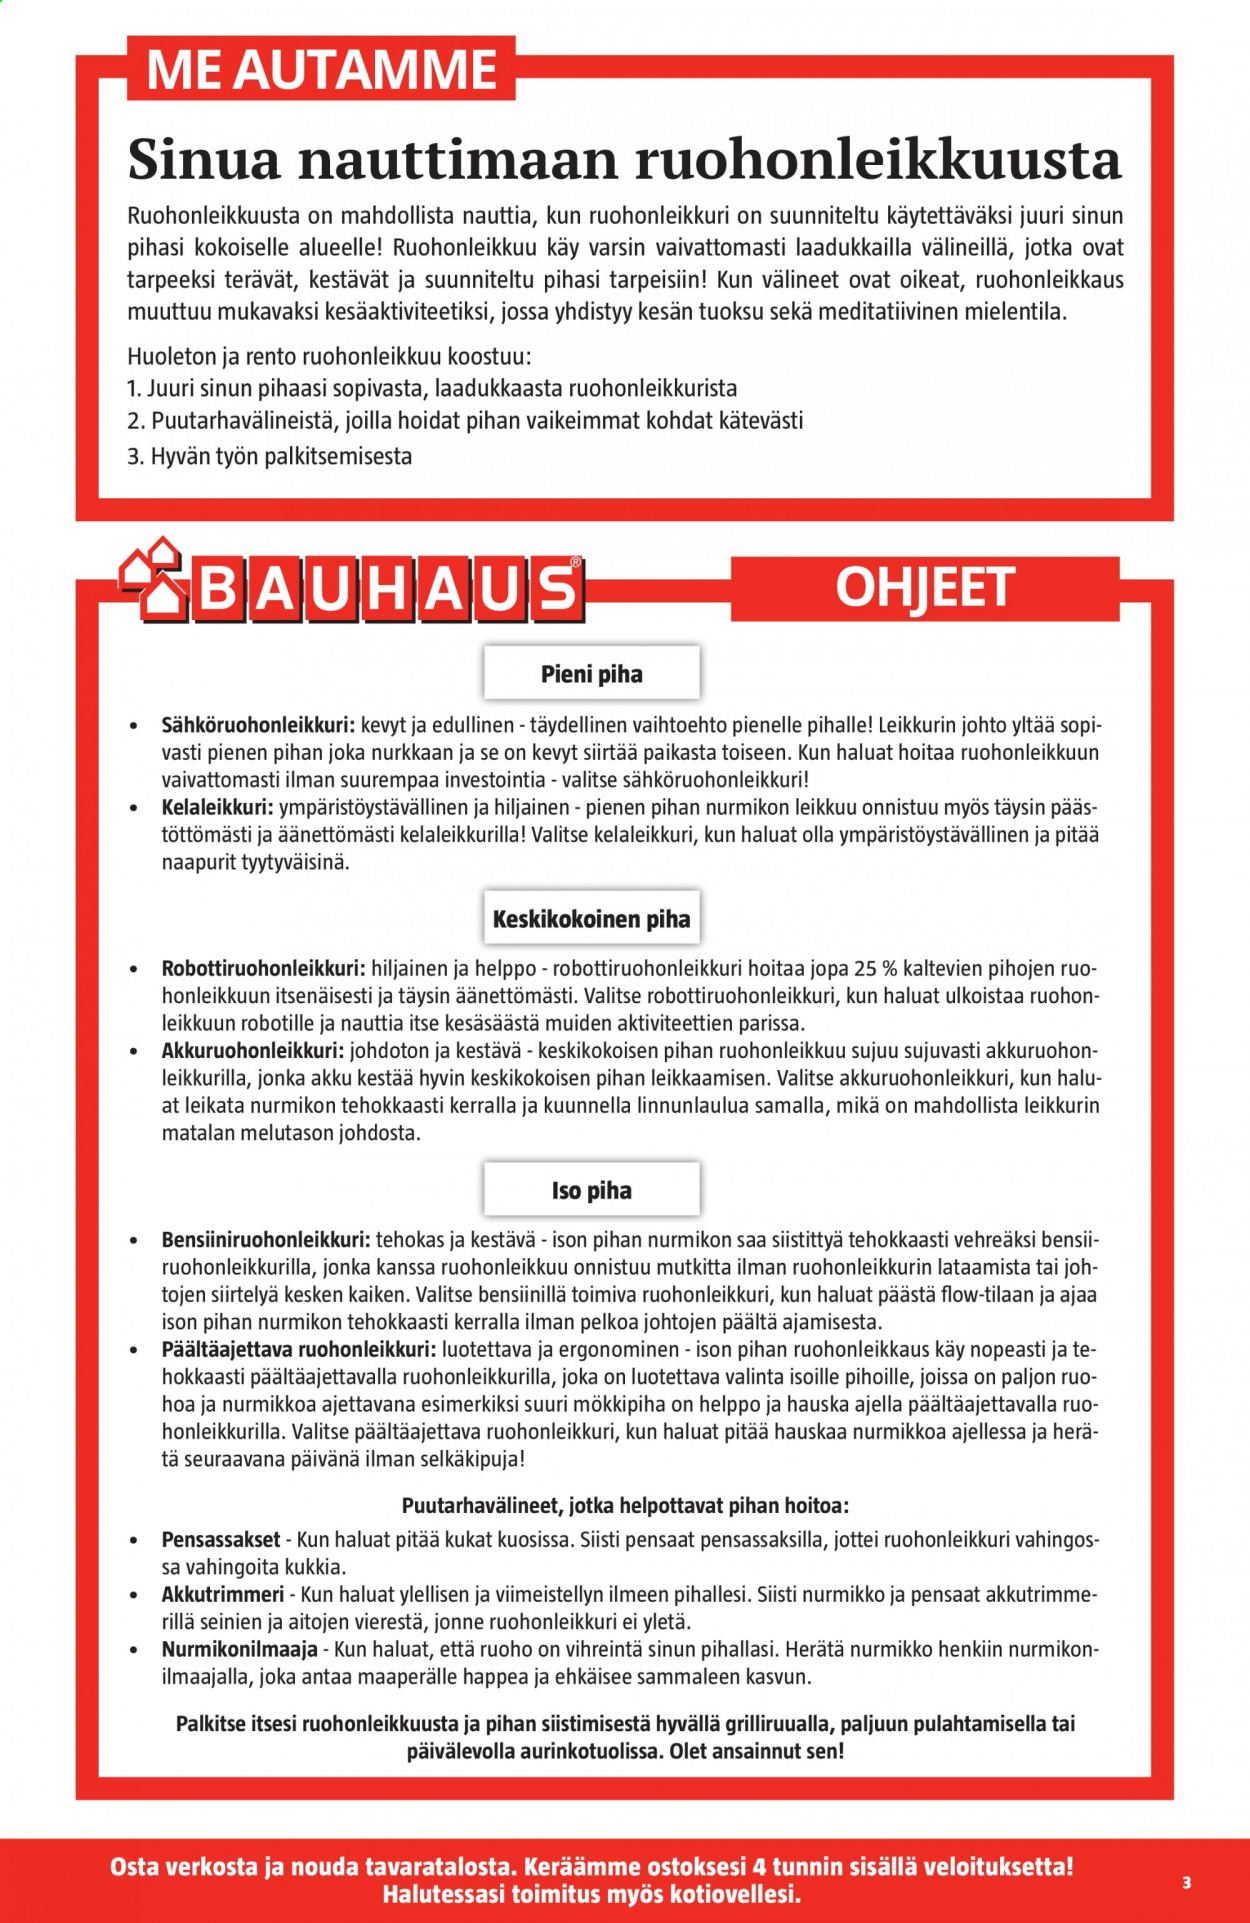 Bauhaus tarjouslehti  - 16.06.2021 - 29.06.2021.